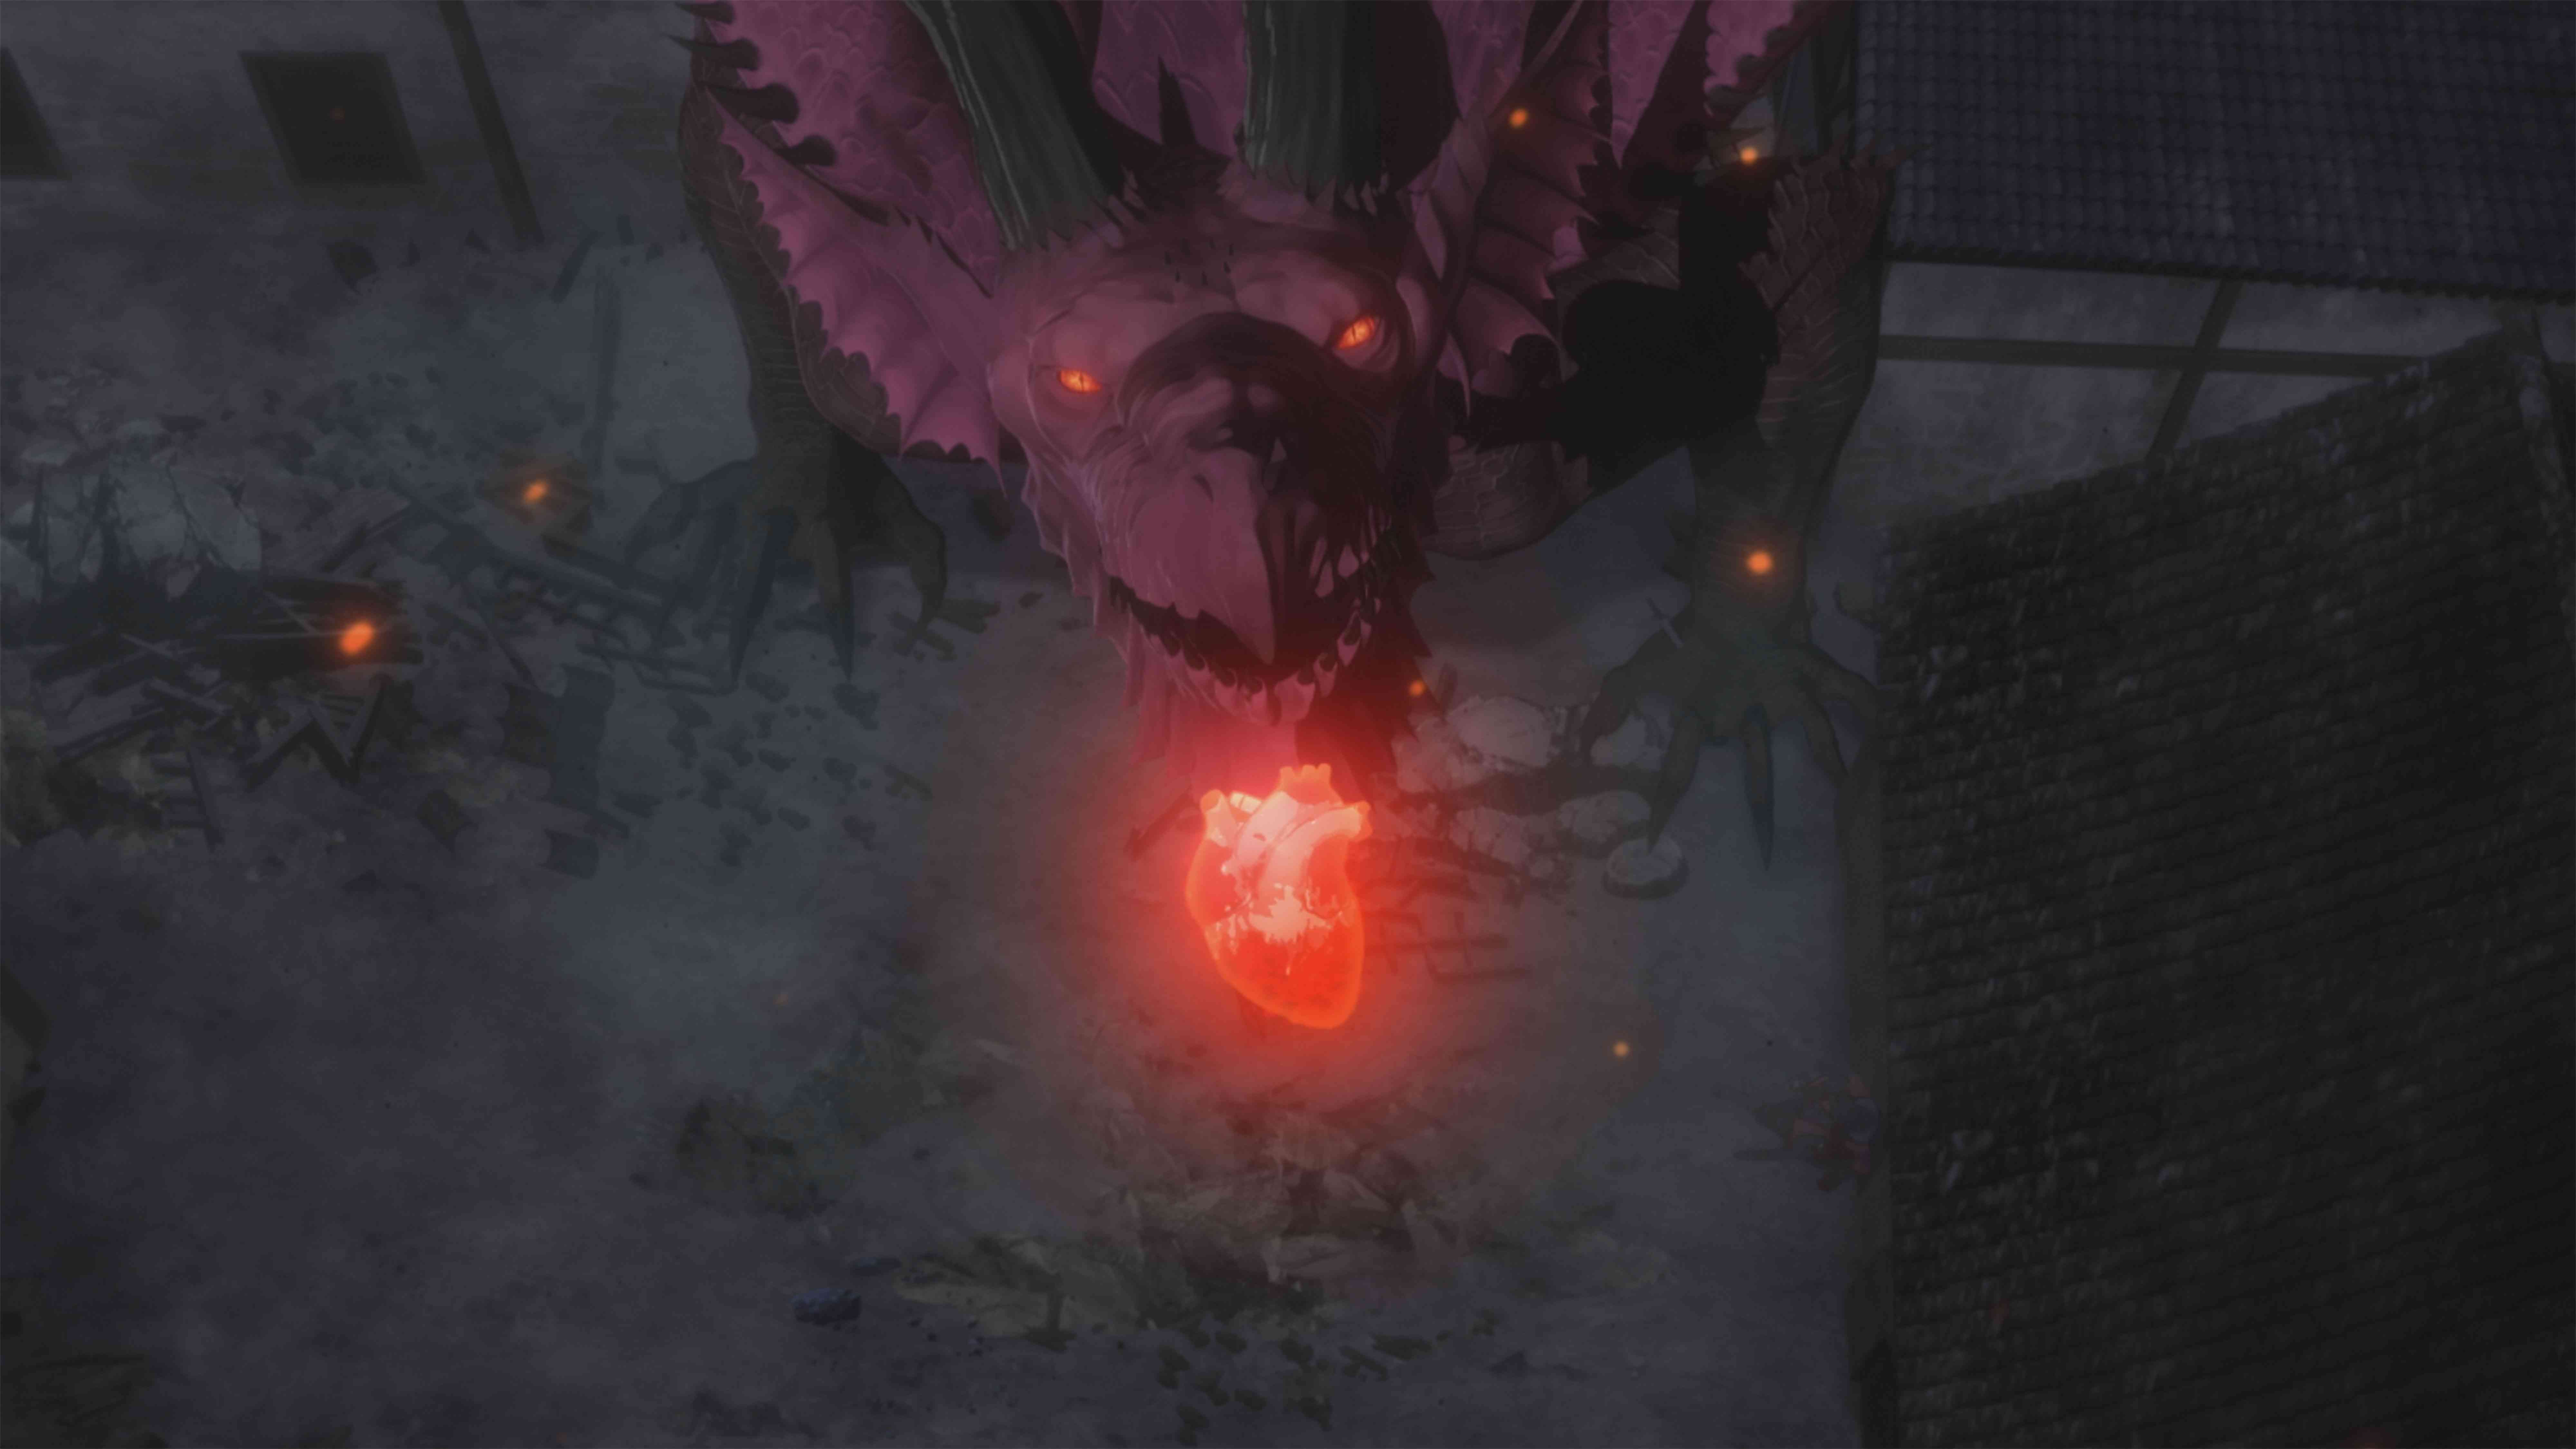 アニメ ドラゴンズドグマ はnetflixにて9月17日より配信開始 己の心臓を奪ったドラゴンに復讐を果たすイーサンの勇ましい姿が映る予告編も公開